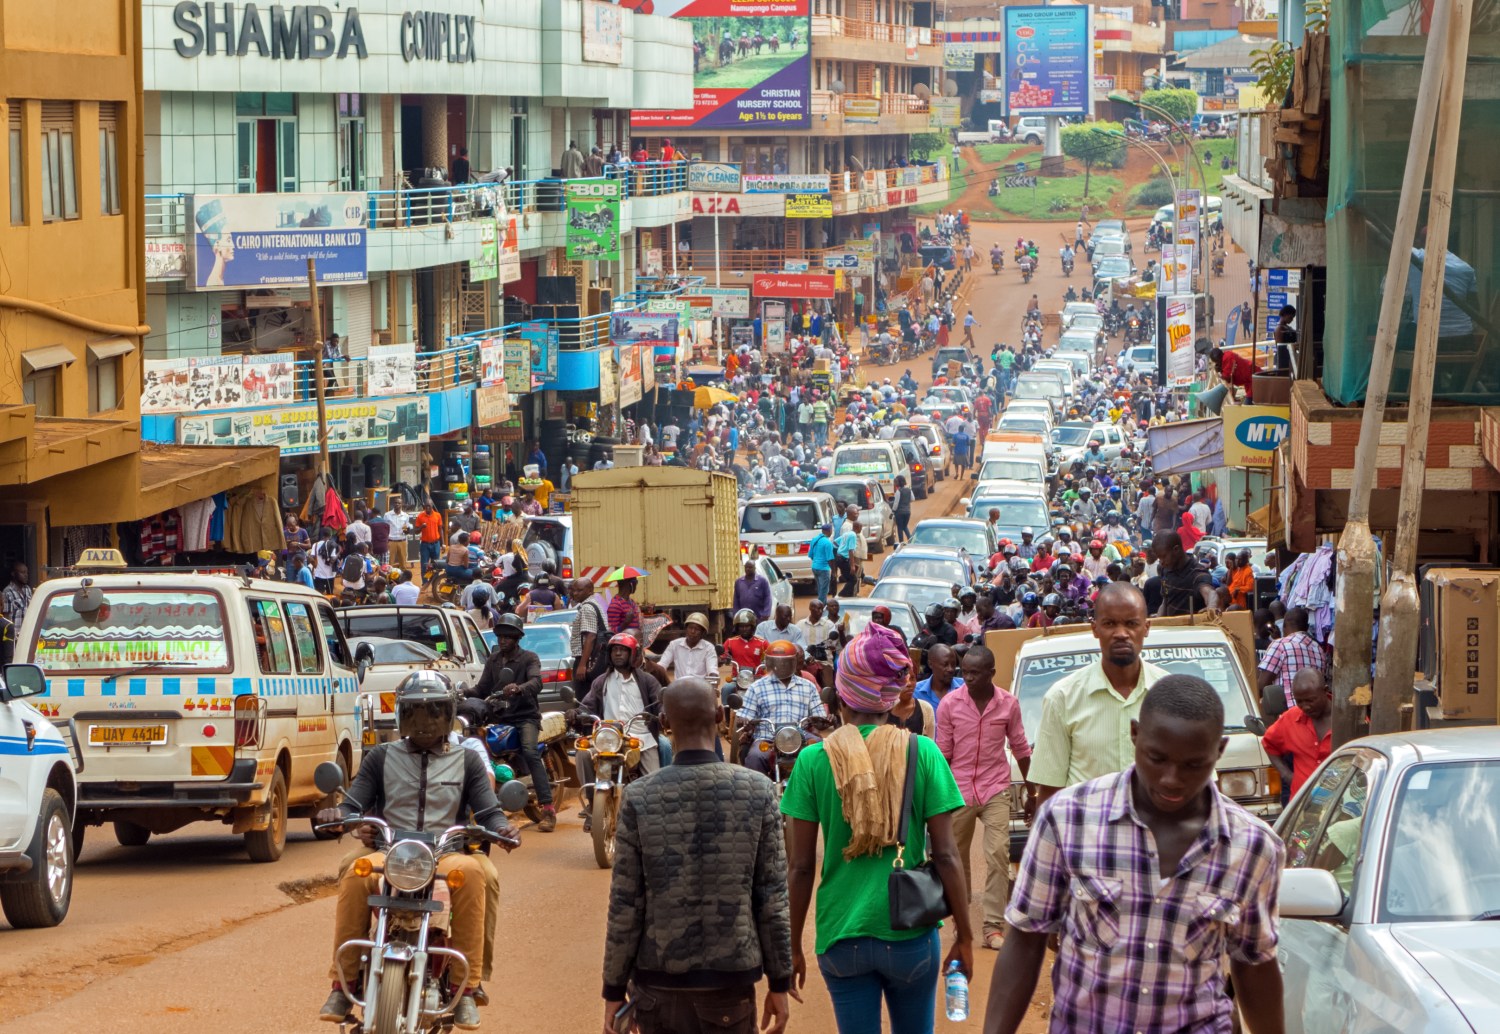 Heavy traffic in Kampala, Uganda